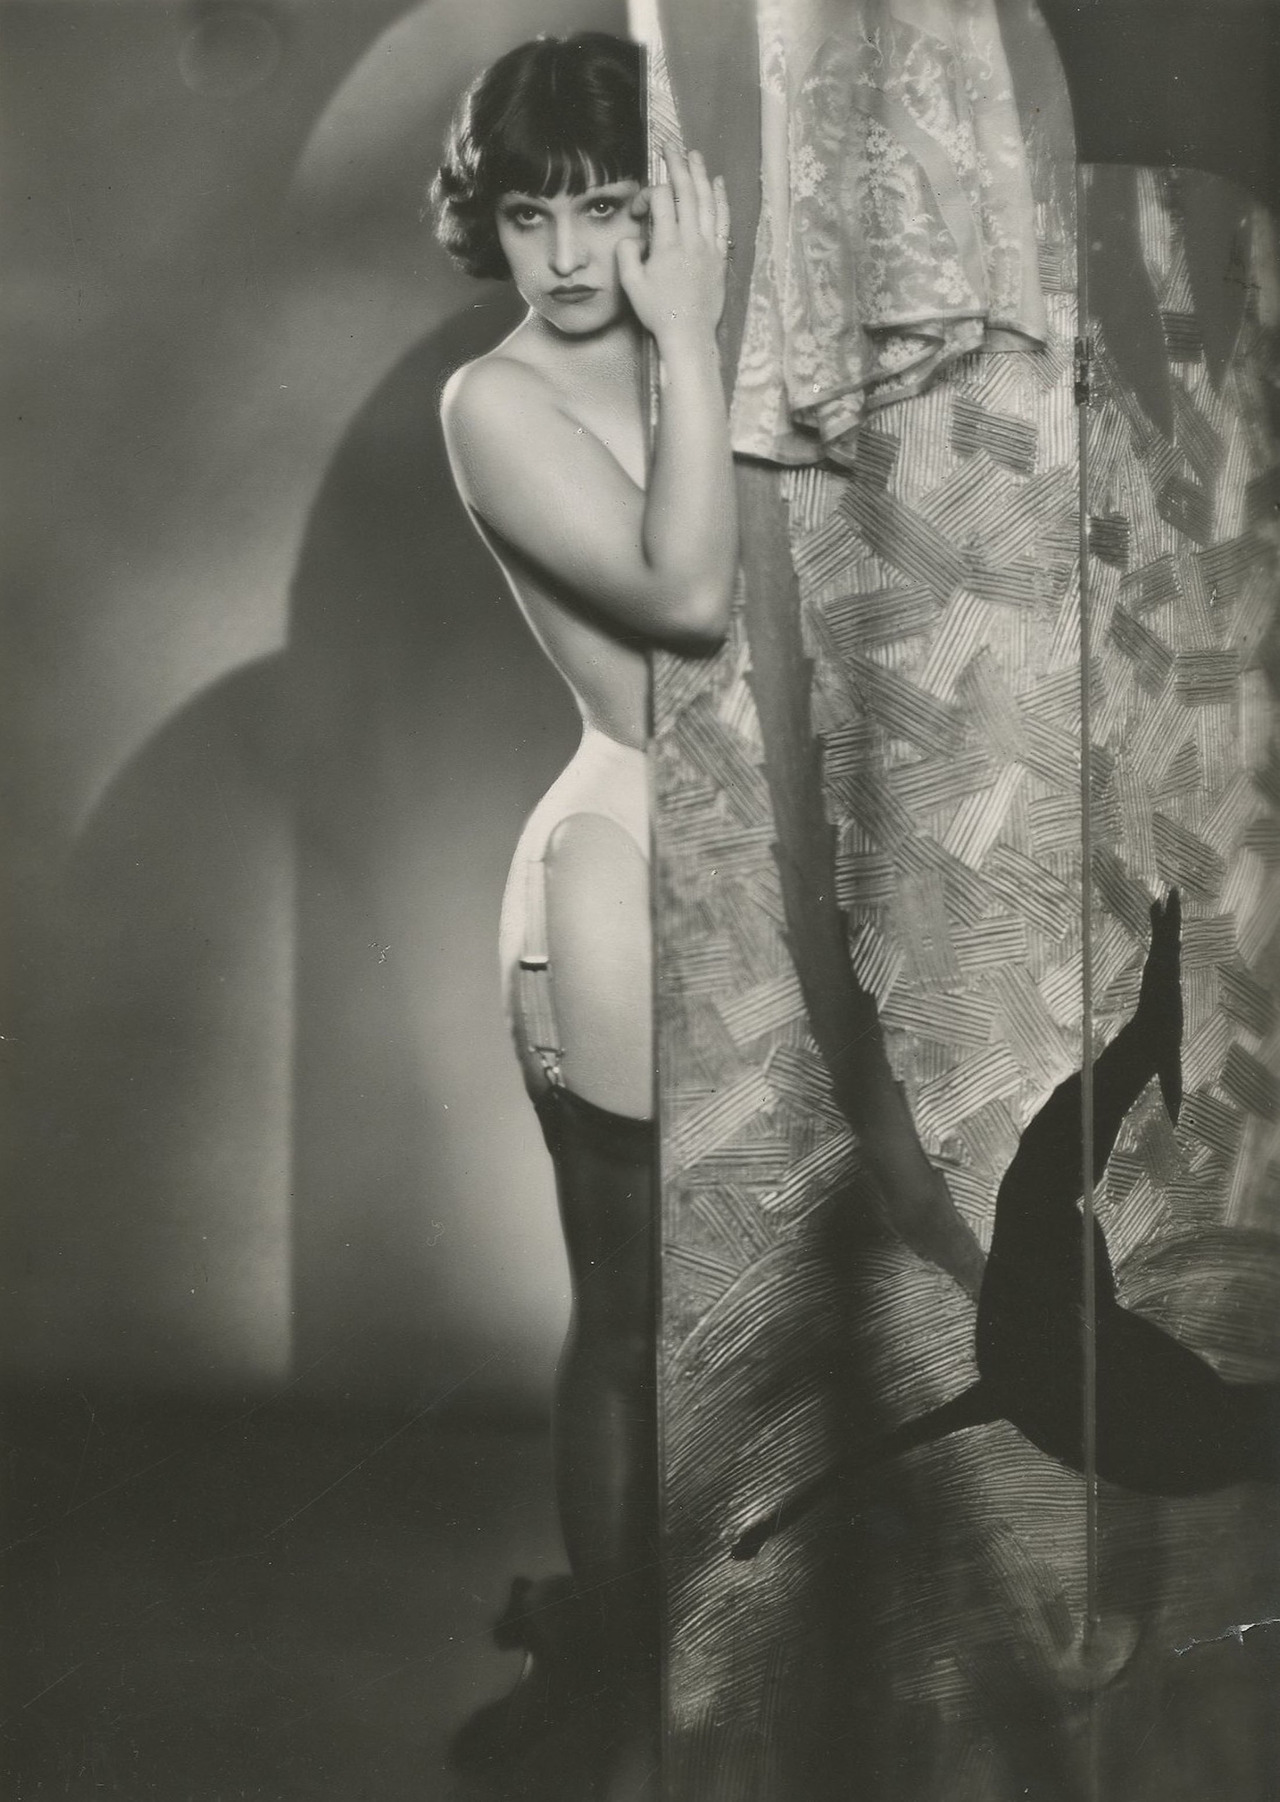 rivesveronique:
“ Ginette Leclerc
Portrait en pied, strip-tease, c. 1930
Tirage argentique d'époque
”